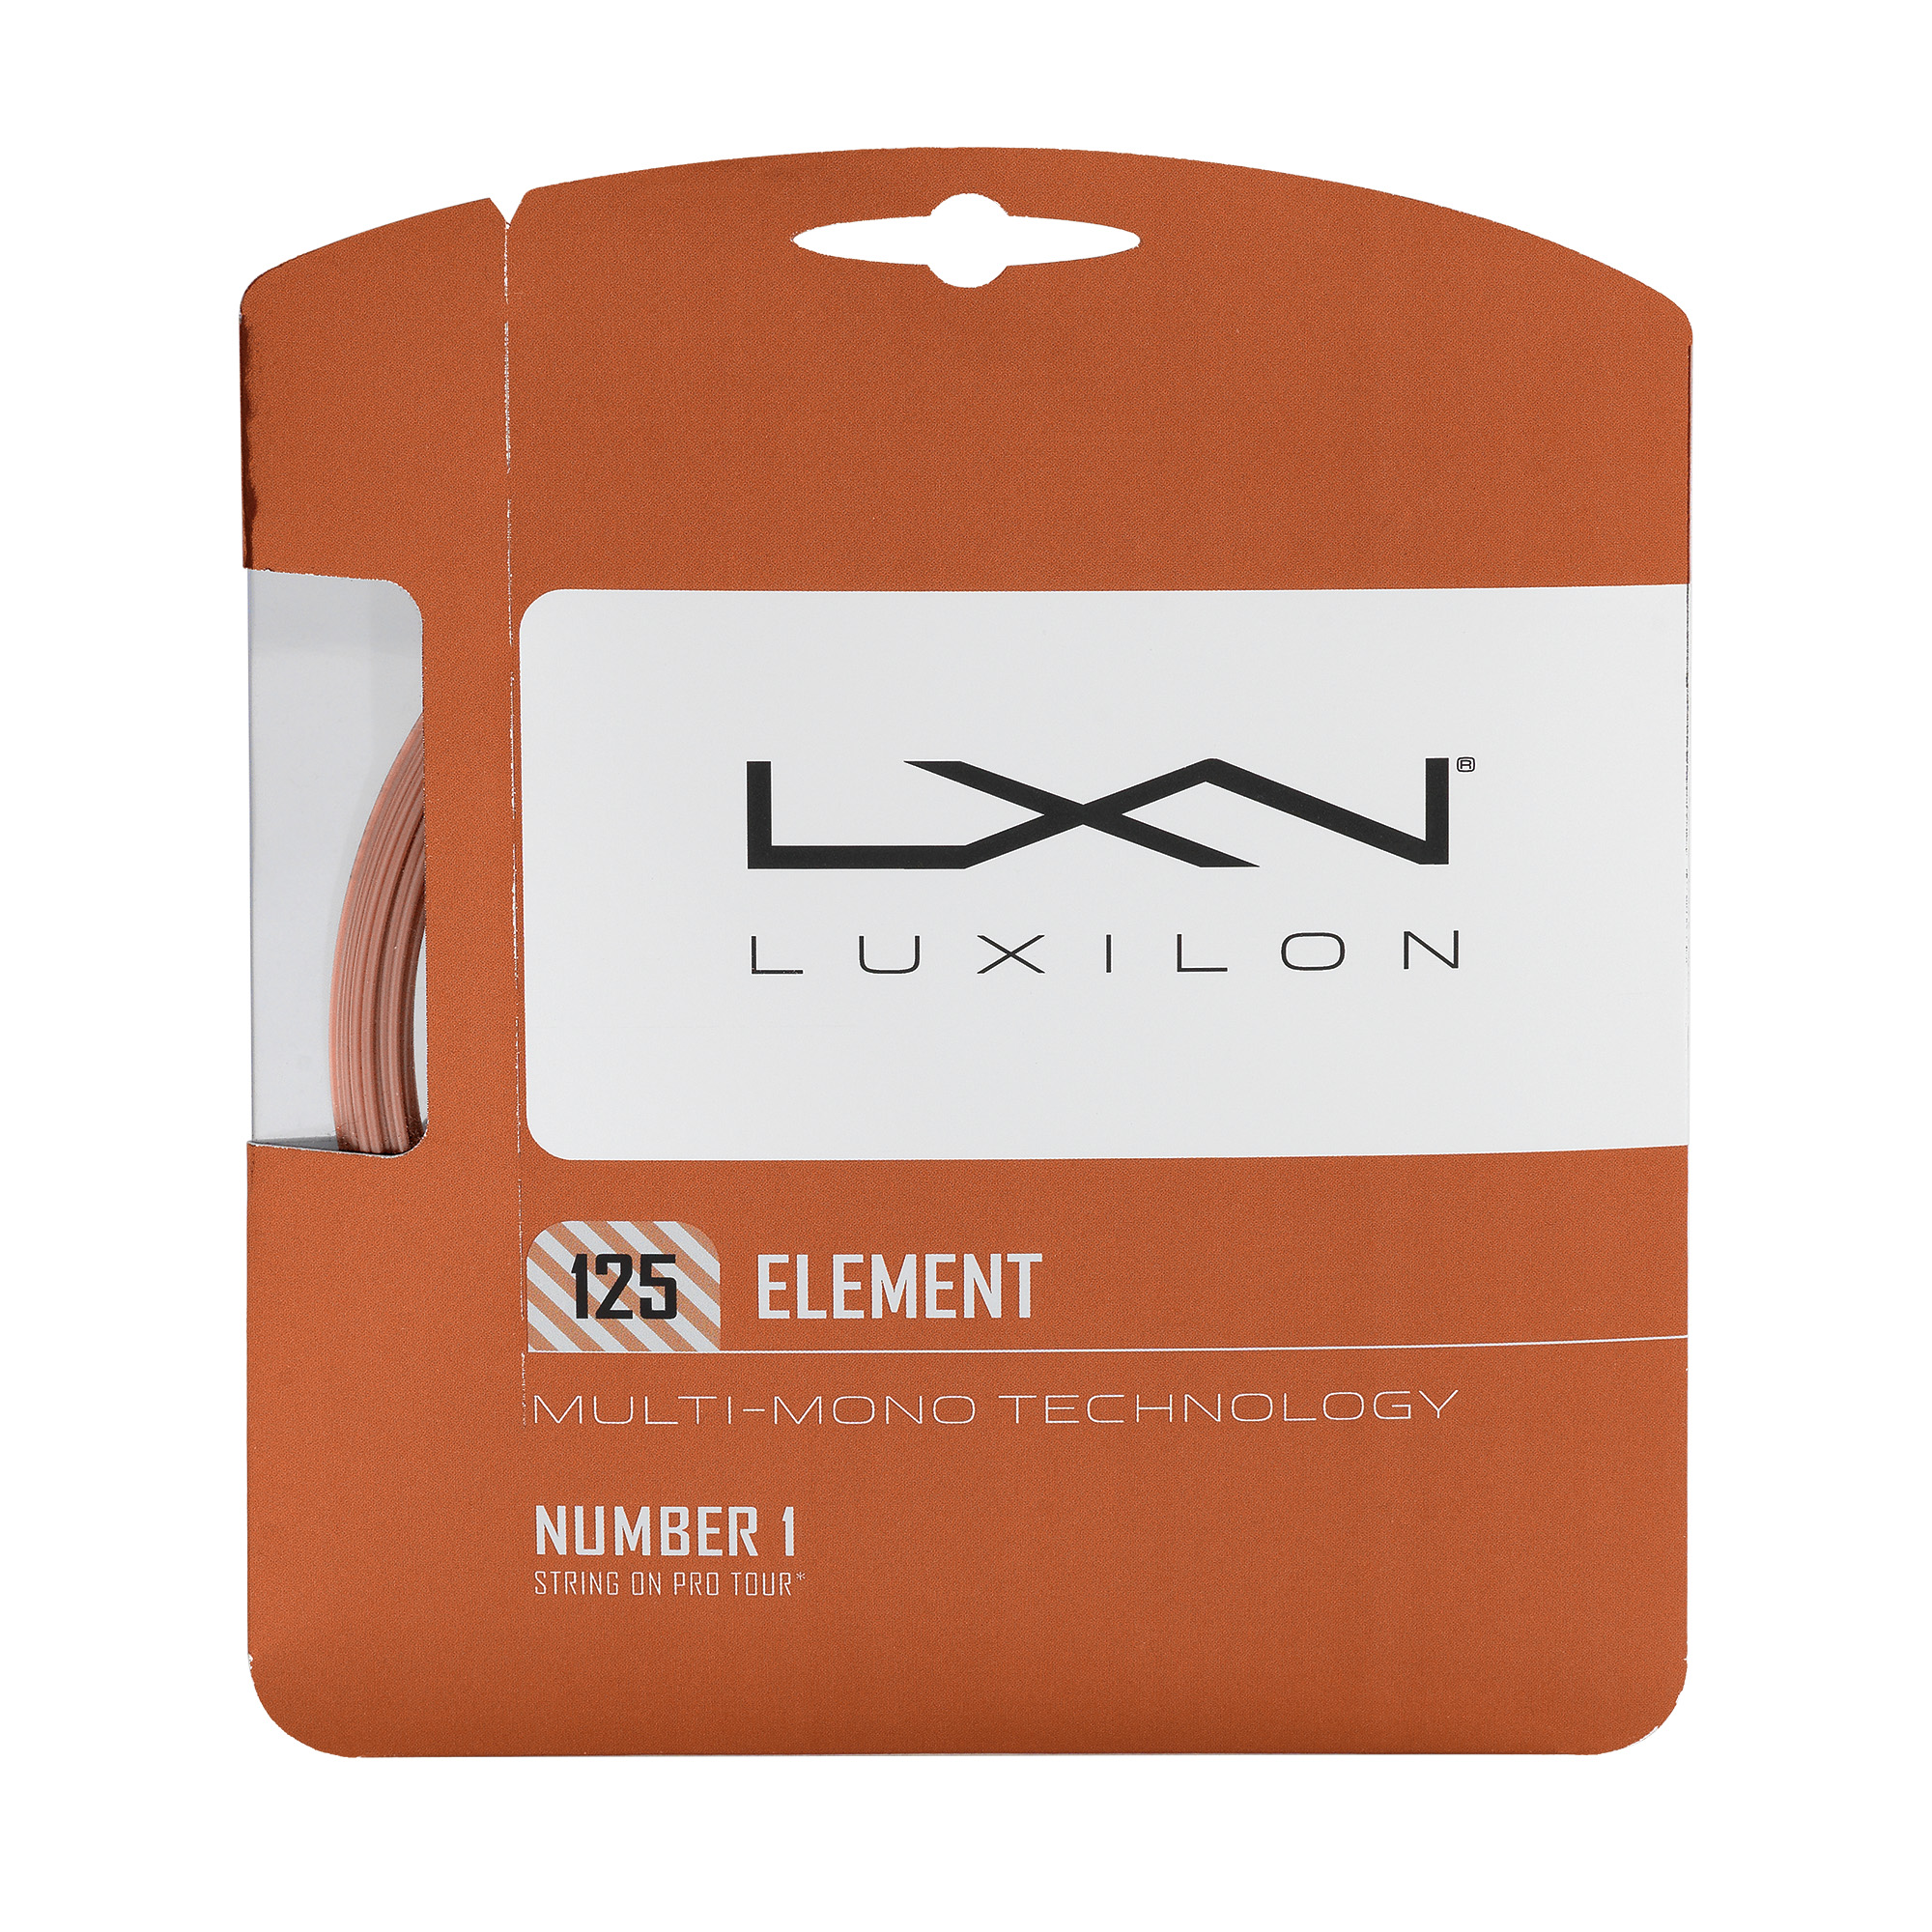 WRZ990105_LXN_Luxilon_125_Element_Package